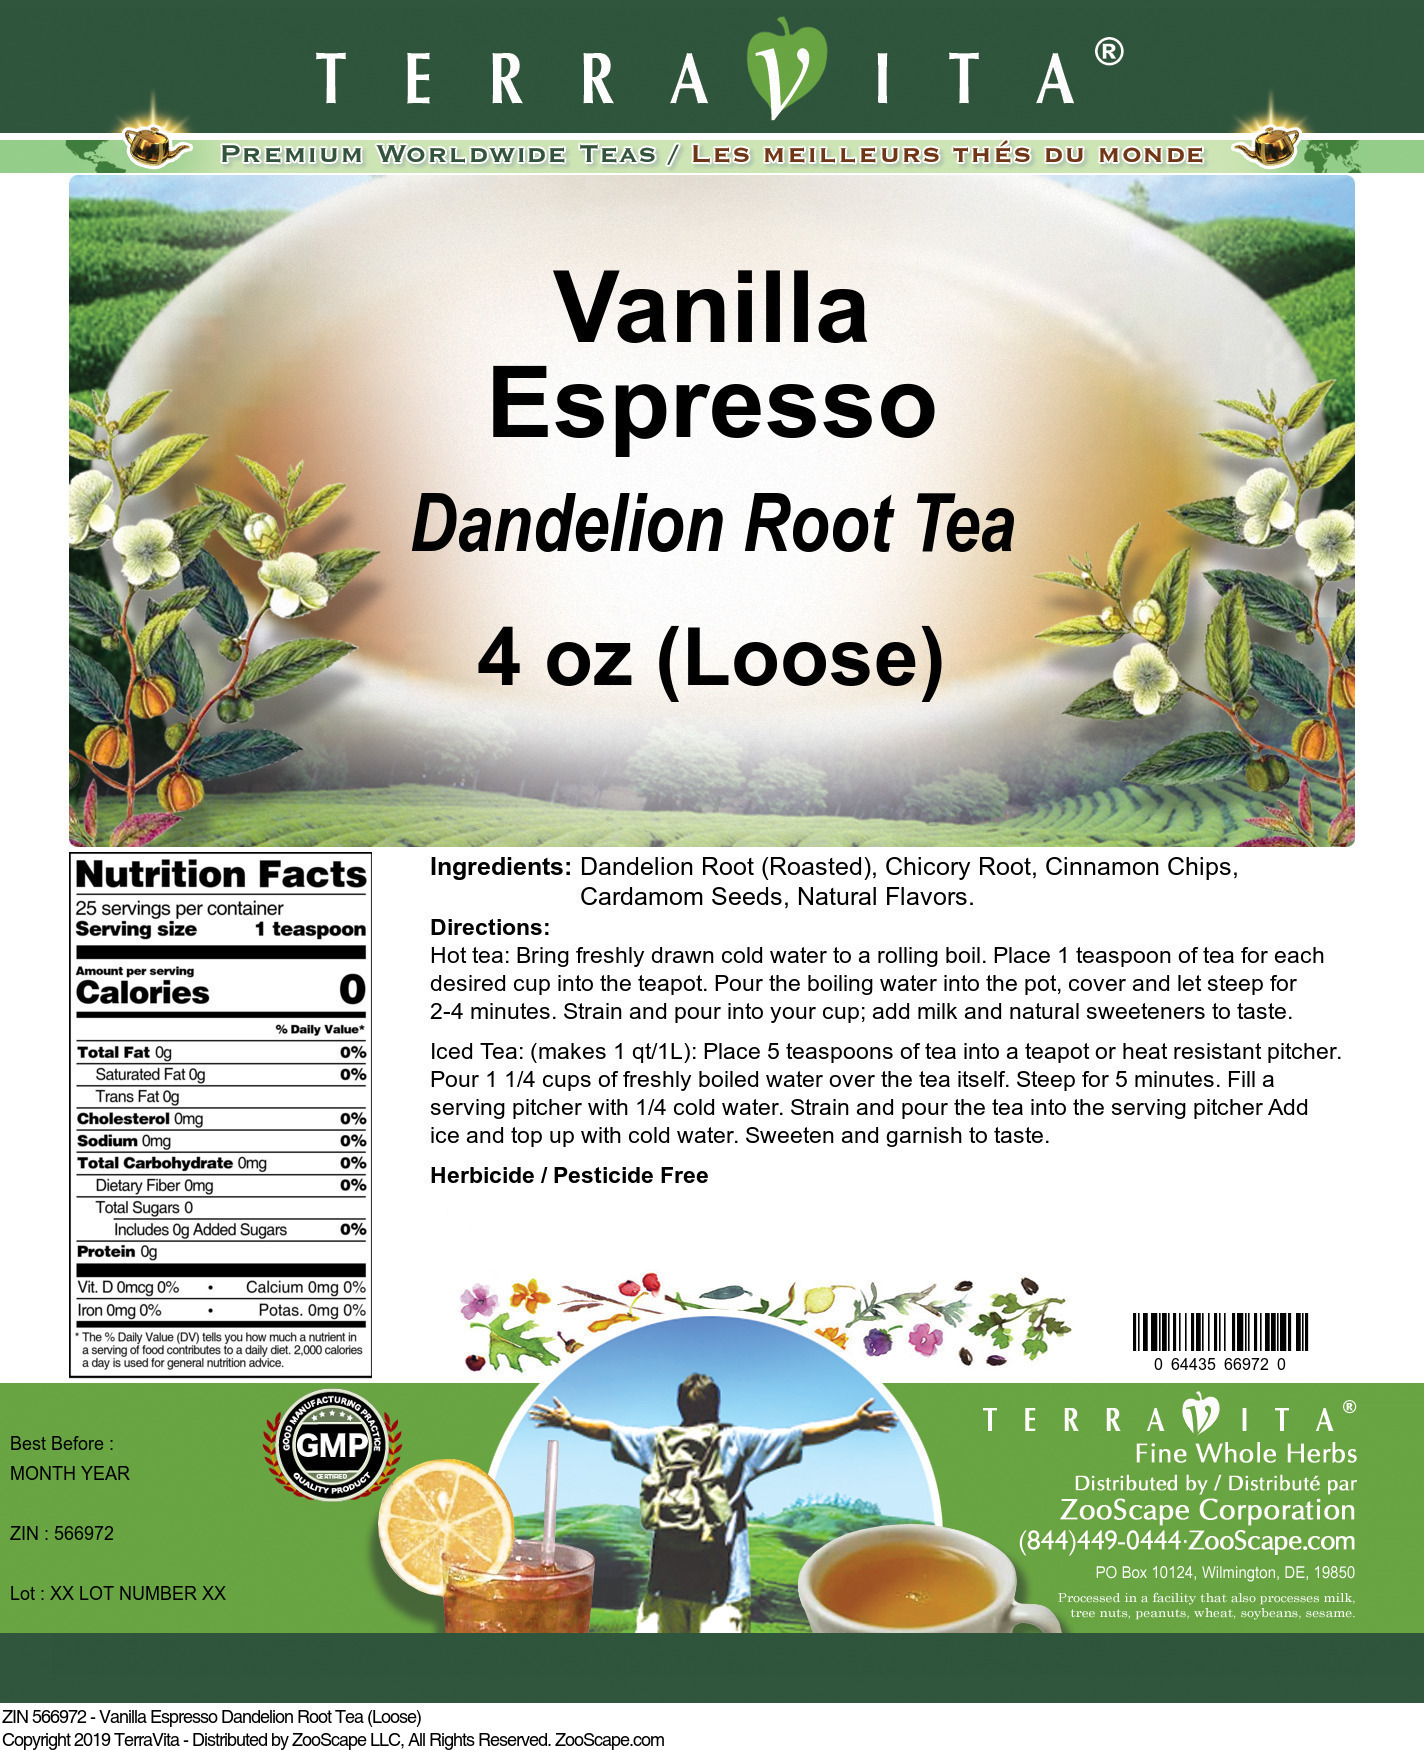 Vanilla Espresso Dandelion Root Tea (Loose) - Label